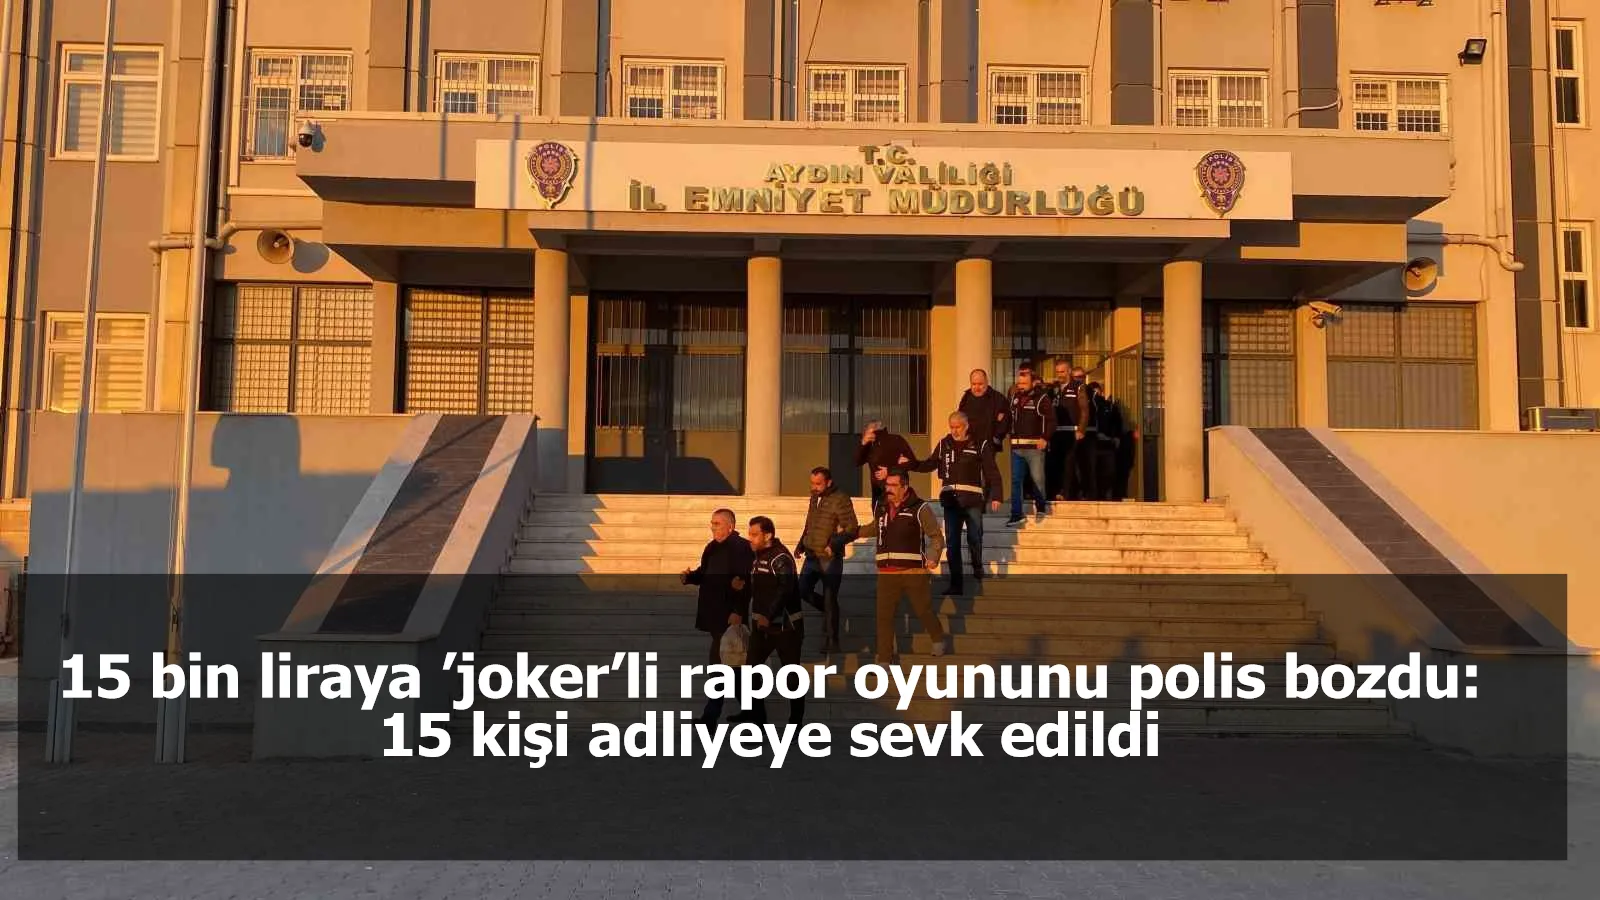 15 bin liraya ’joker’li rapor oyununu polis bozdu: 15 kişi adliyeye sevk edildi